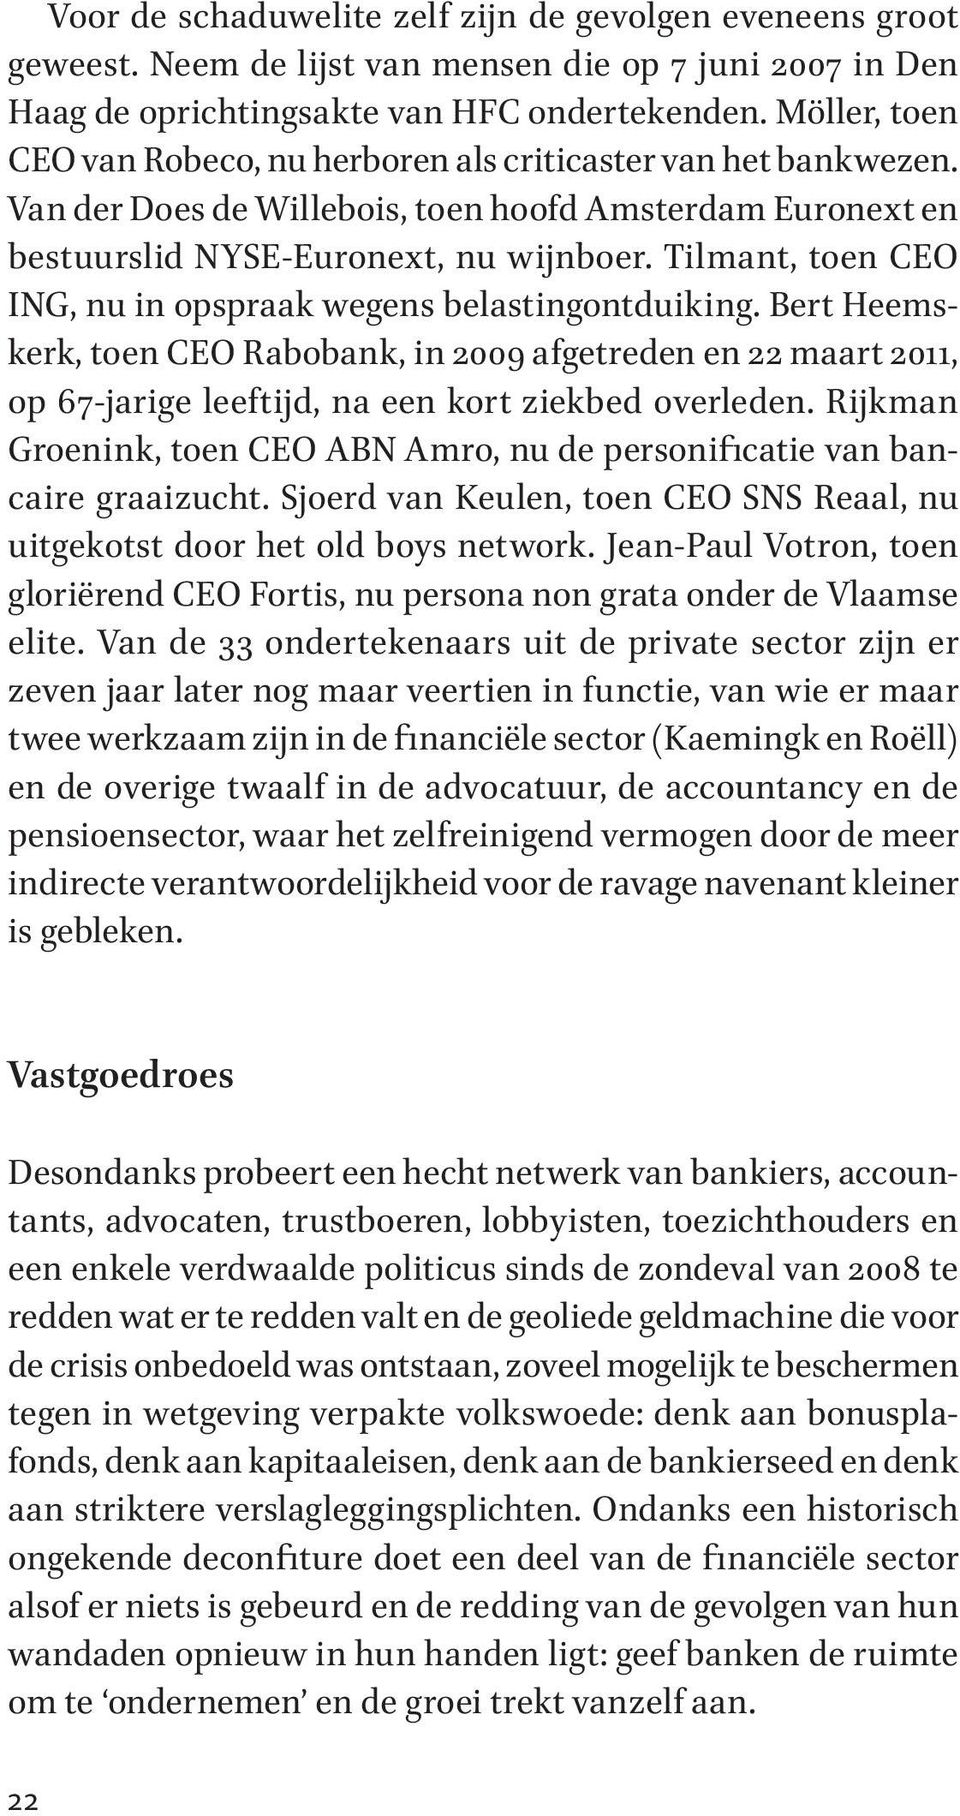 Tilmant, toen CEO ING, nu in opspraak wegens belastingontduiking. Bert Heemskerk, toen CEO Rabobank, in 2009 afgetreden en 22 maart 2011, op 67-jarige leeftijd, na een kort ziekbed overleden.